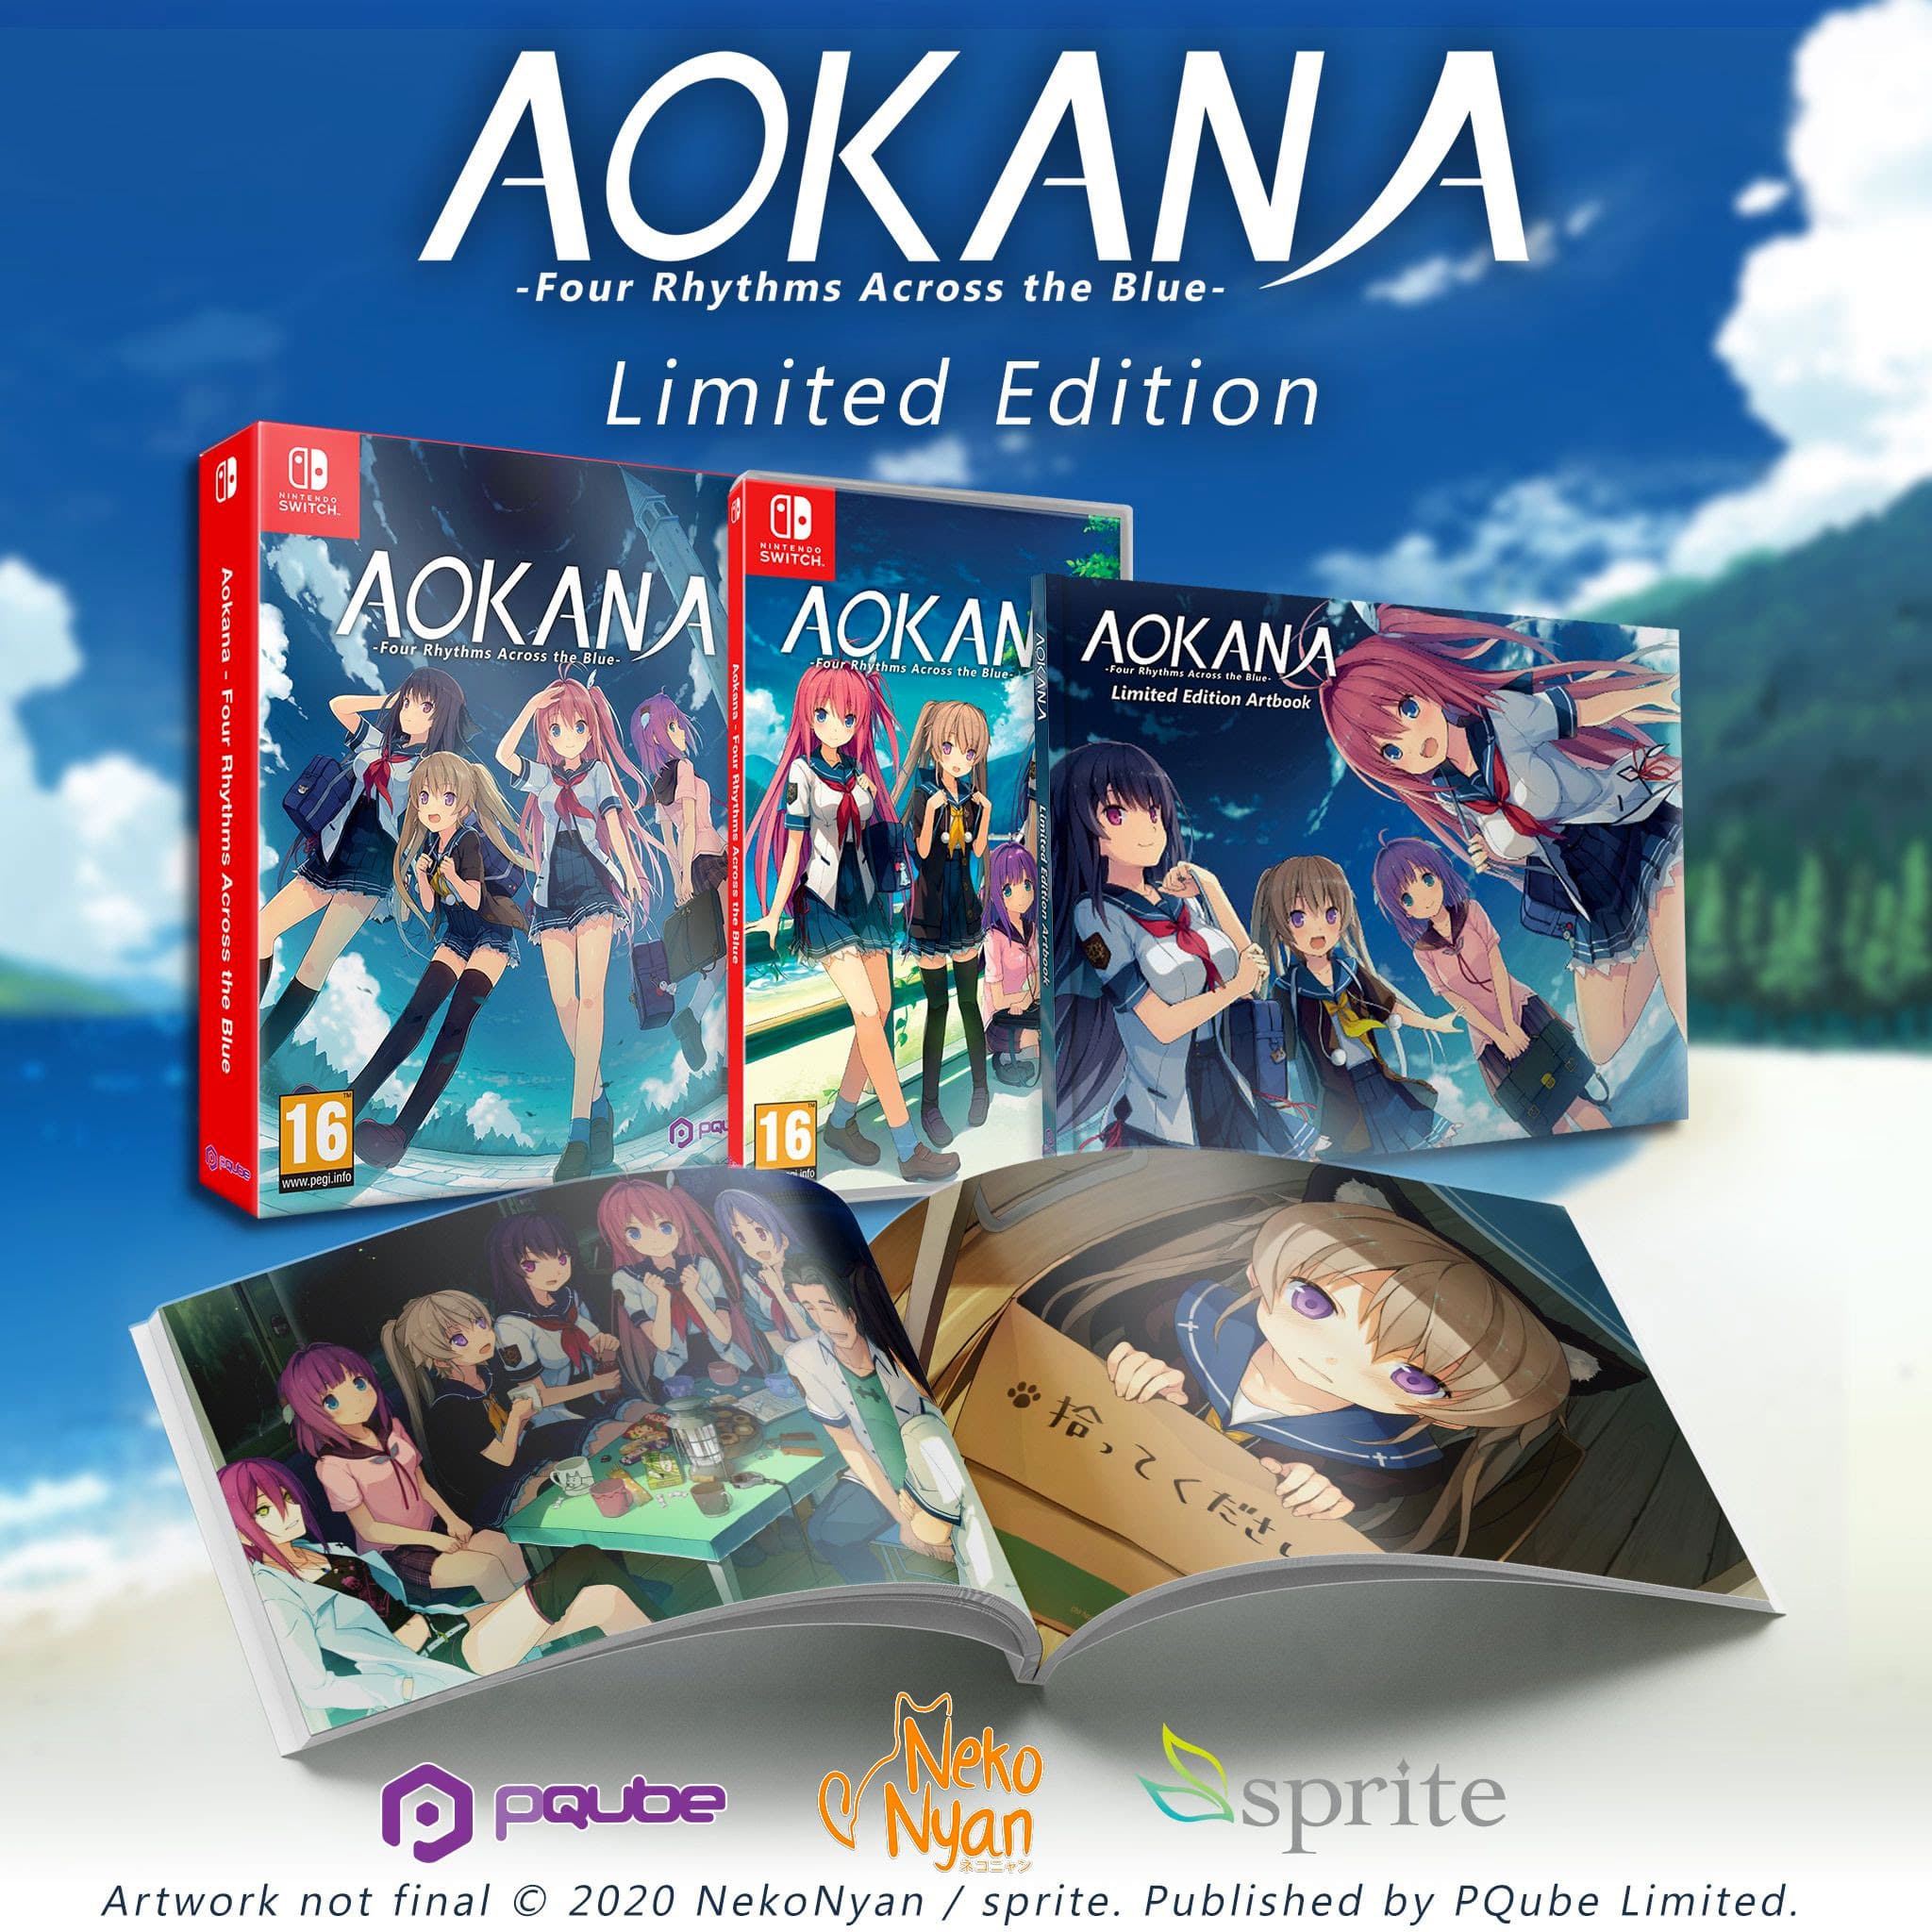 La Limited Edition di Aokana